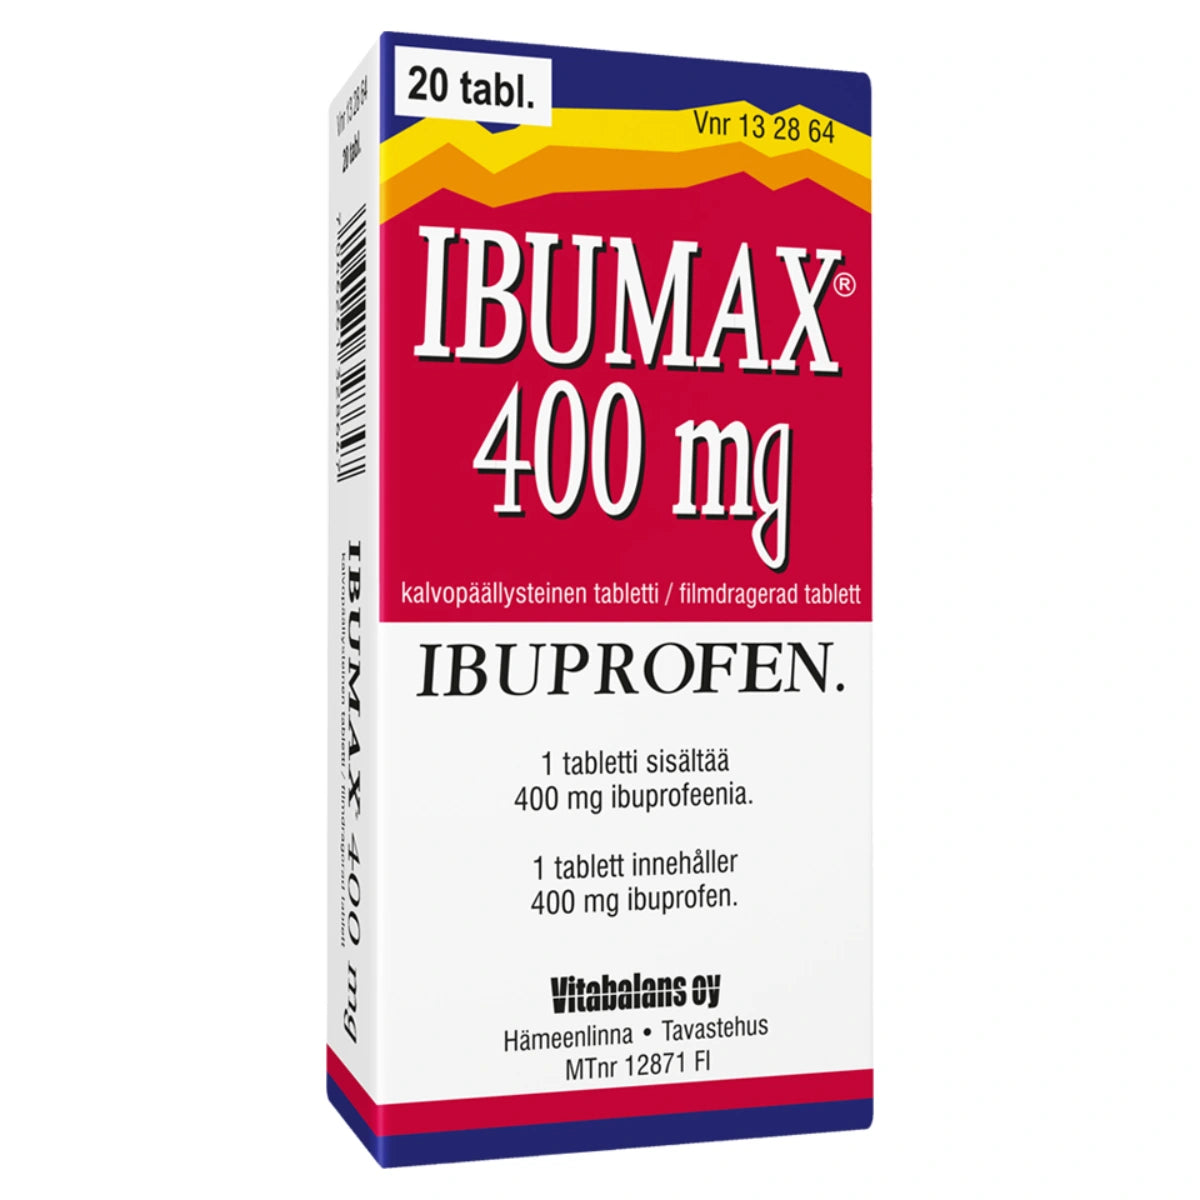 IBUMAX 400 mg tabletti, kalvopäällysteinen 20 kpl